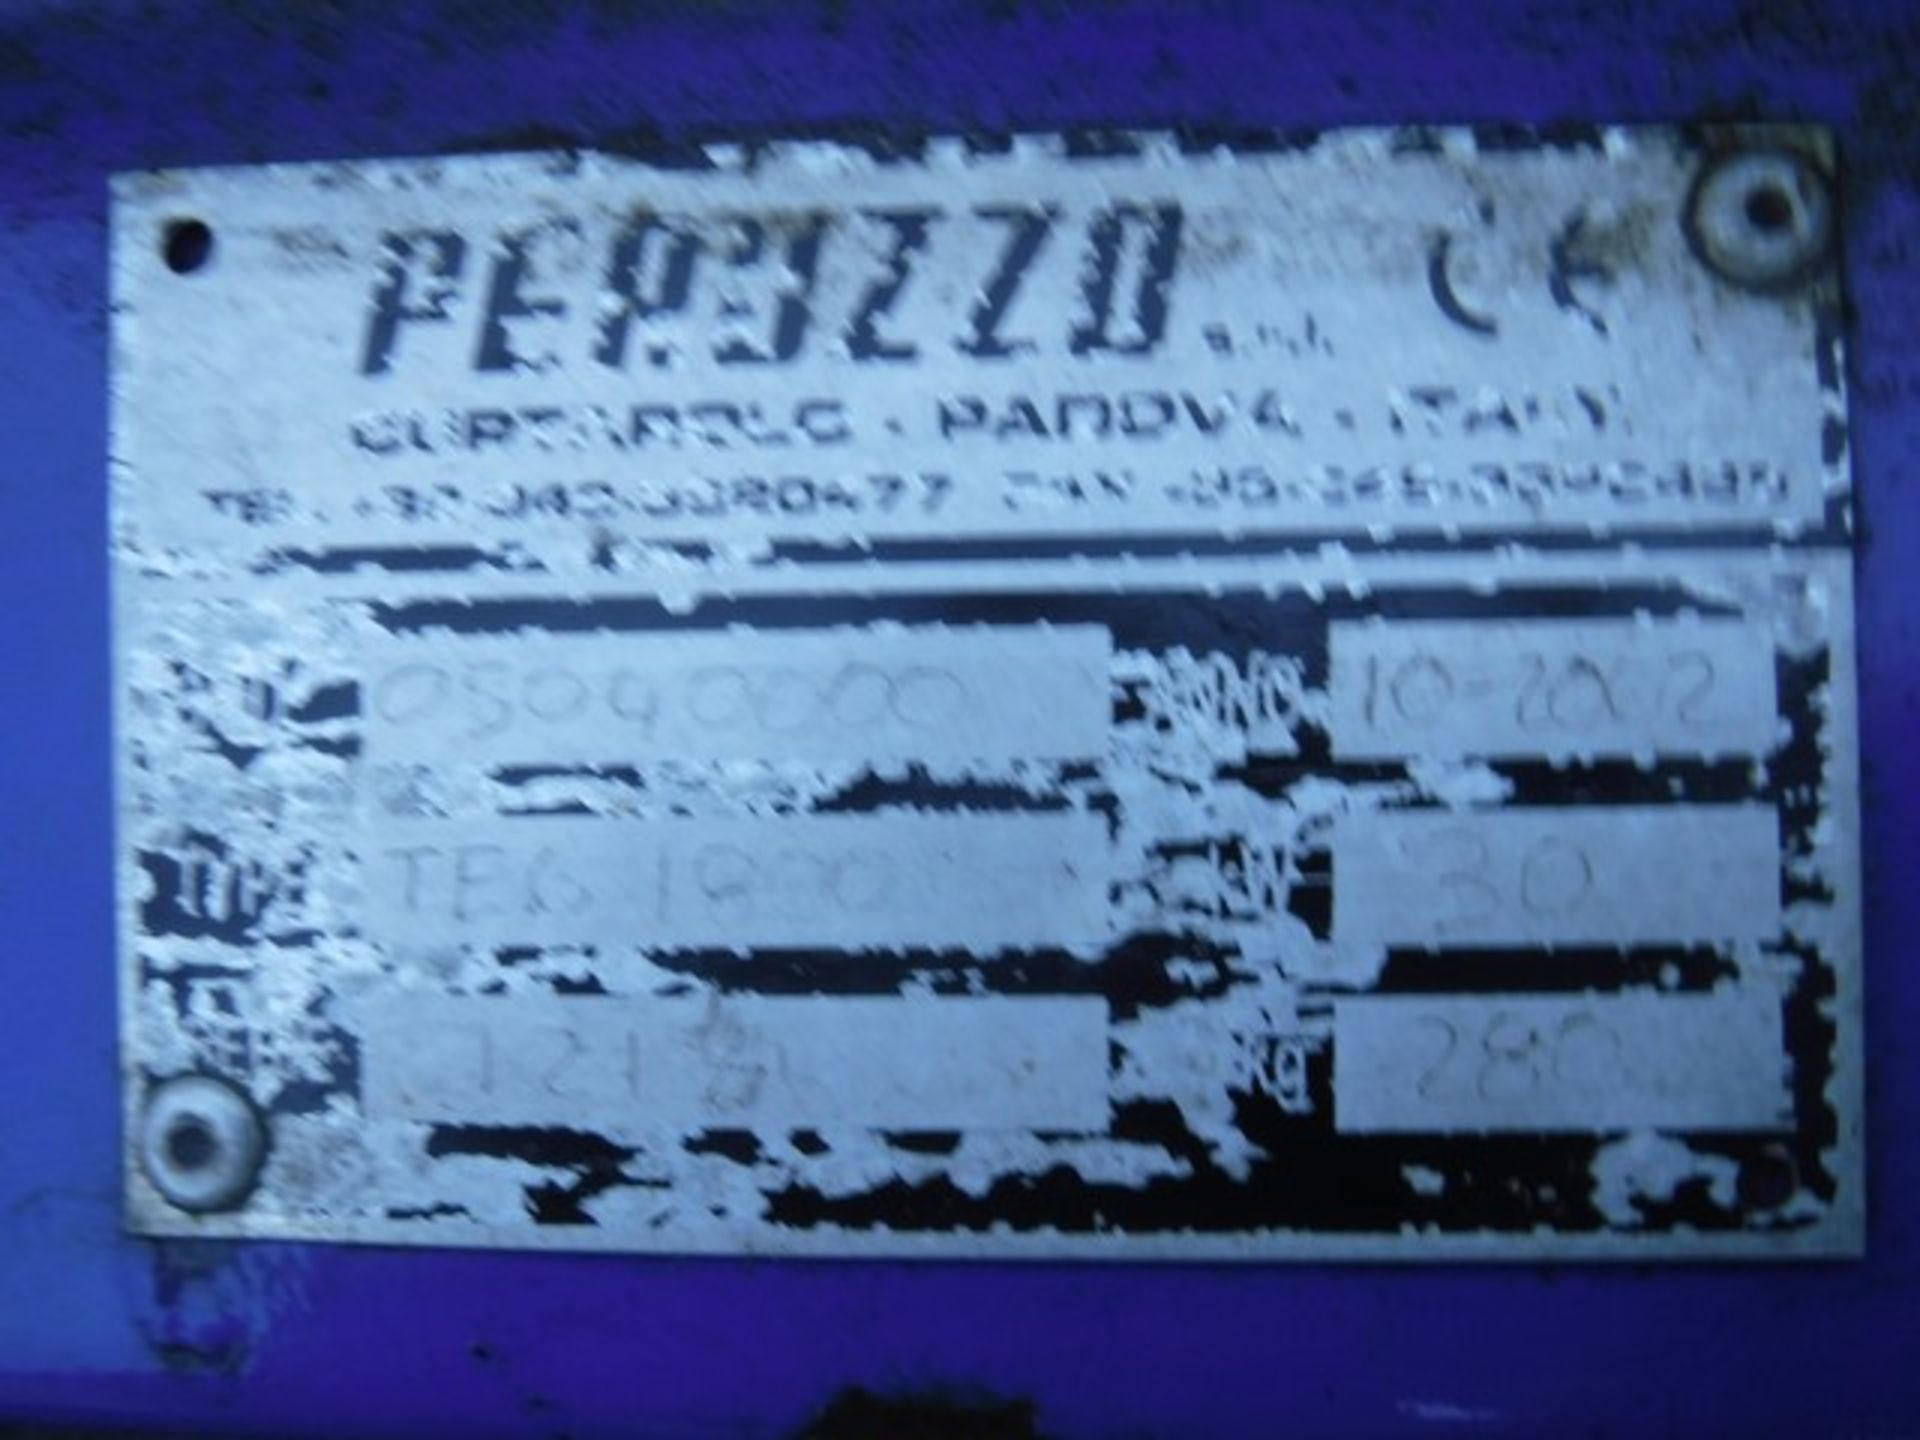 PERUZZO TEG1800 flail mower - Image 3 of 3